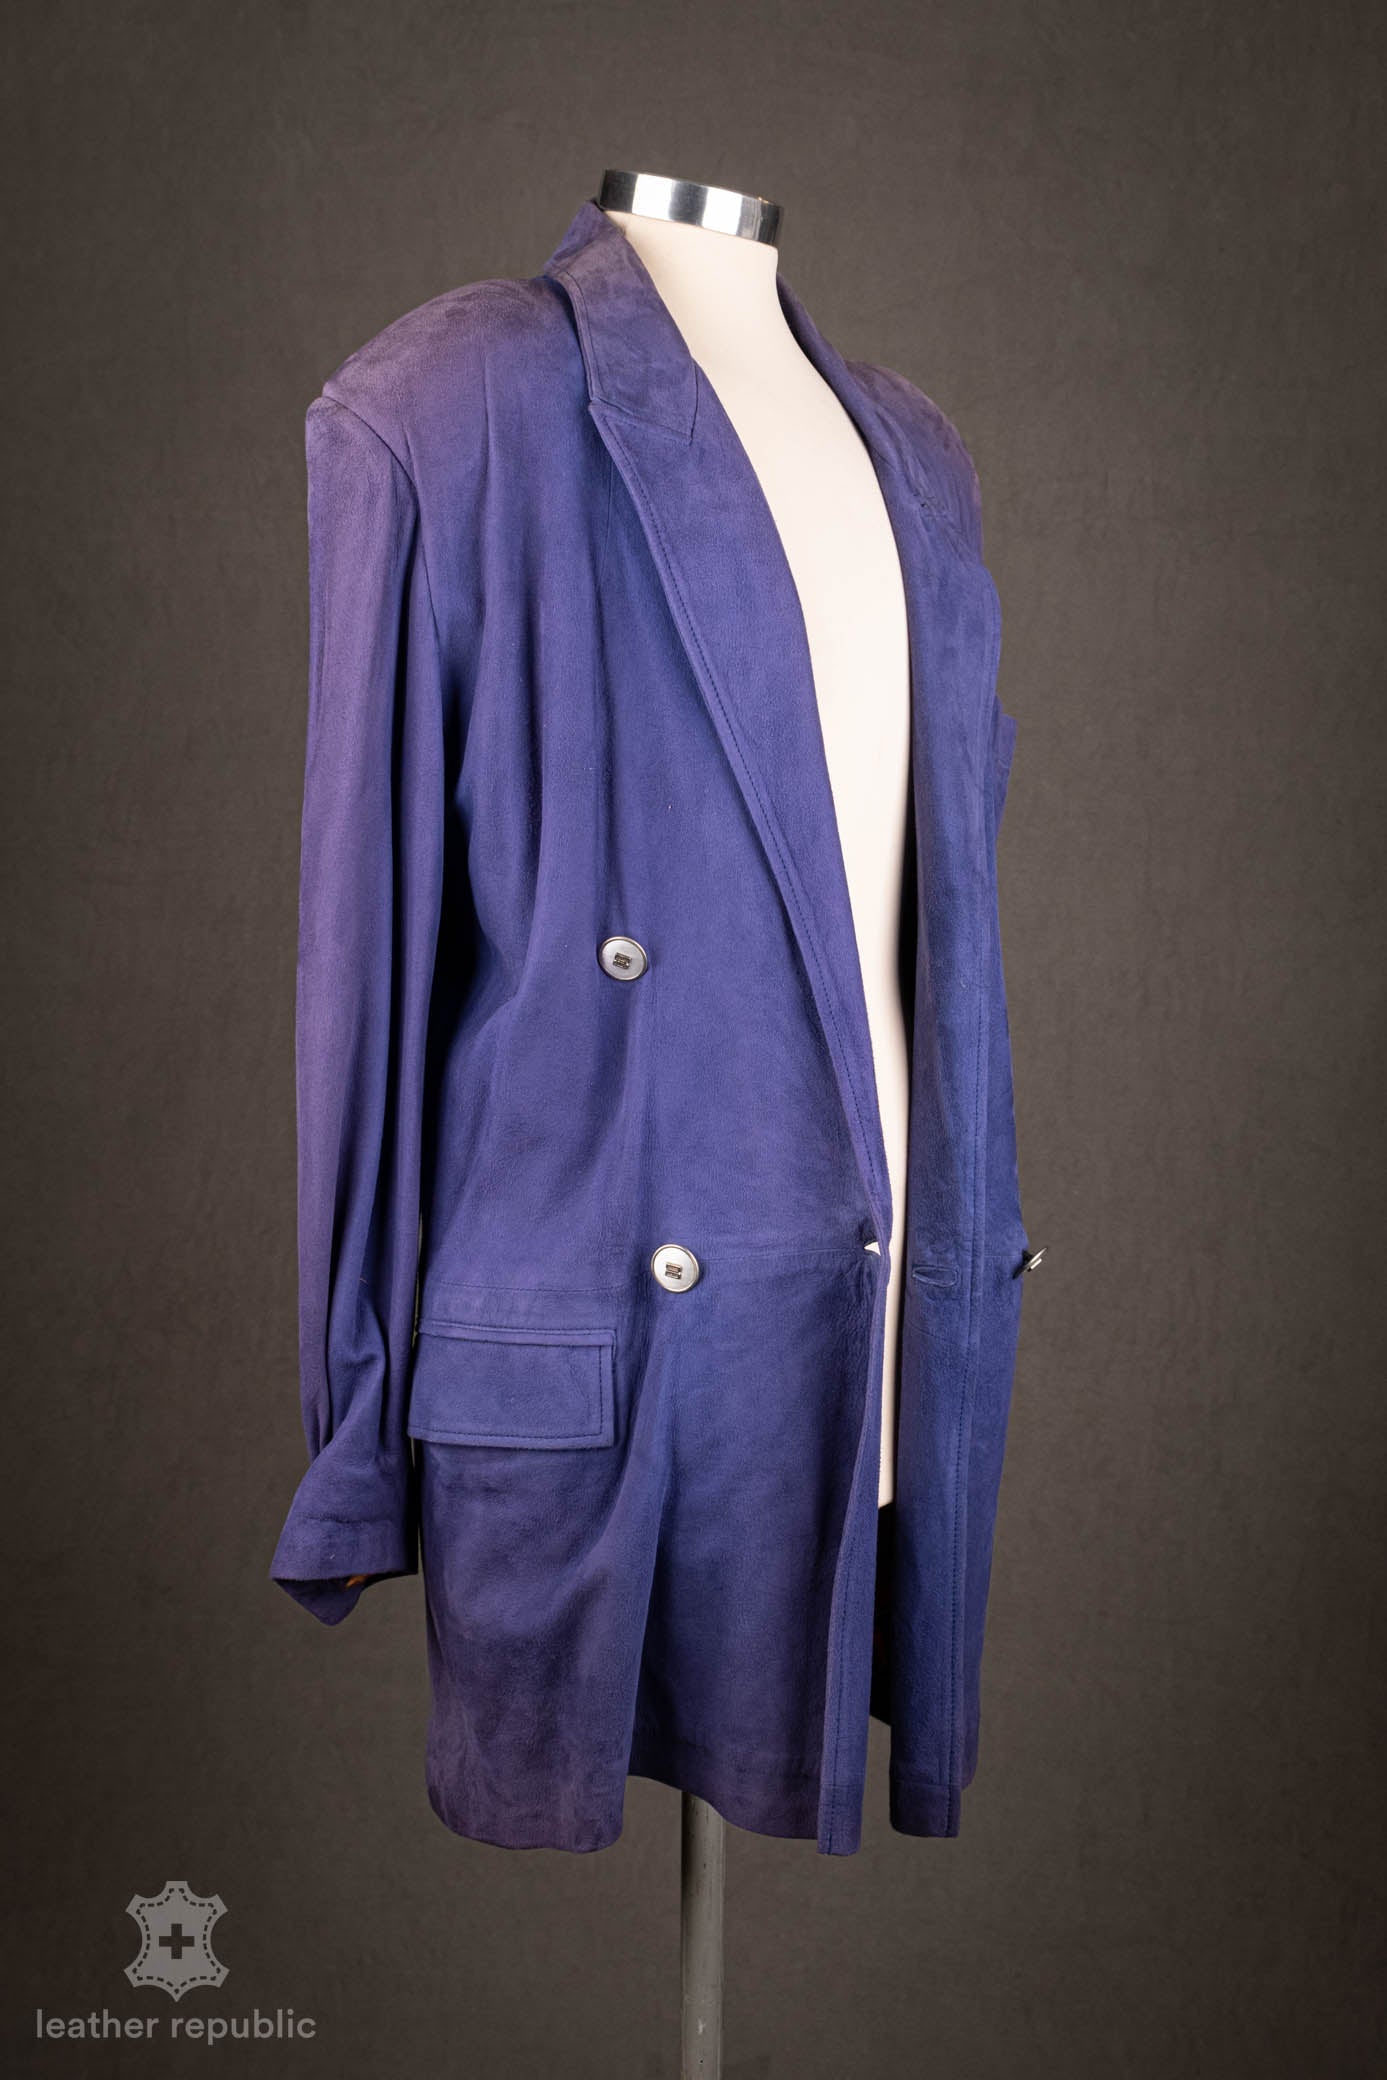 Damen Lederjacke (Ziege), blau/purple, Grösse 42/XL